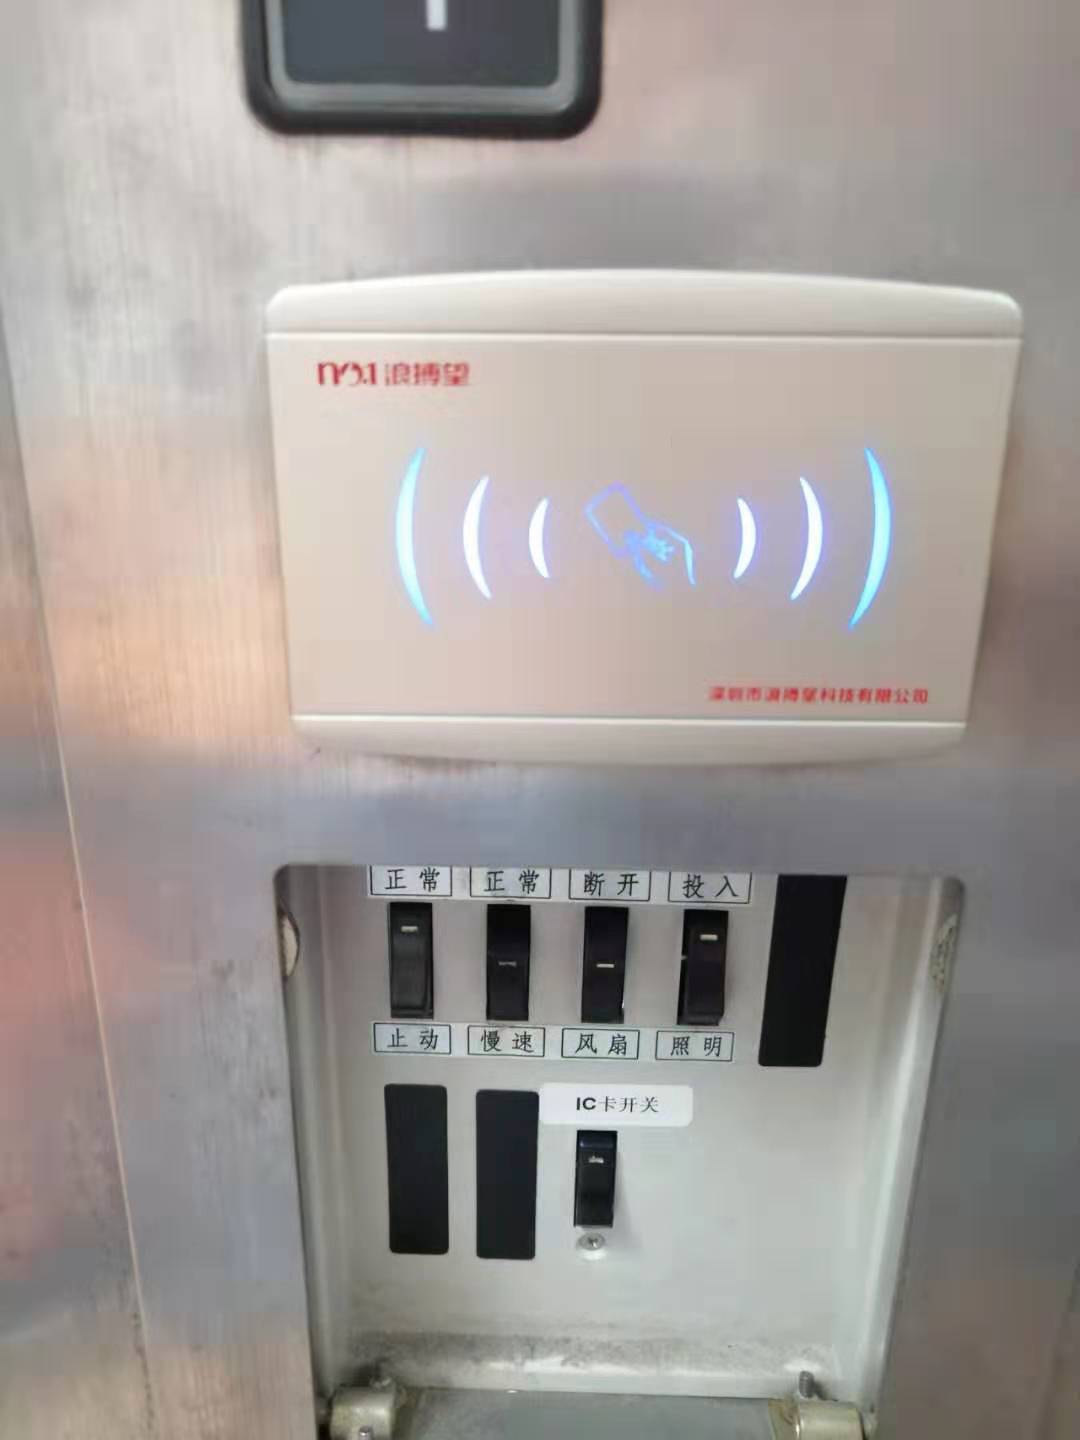 机器人语音梯控系统声控乘梯说话坐电梯呼梯招梯选层按键智能声音